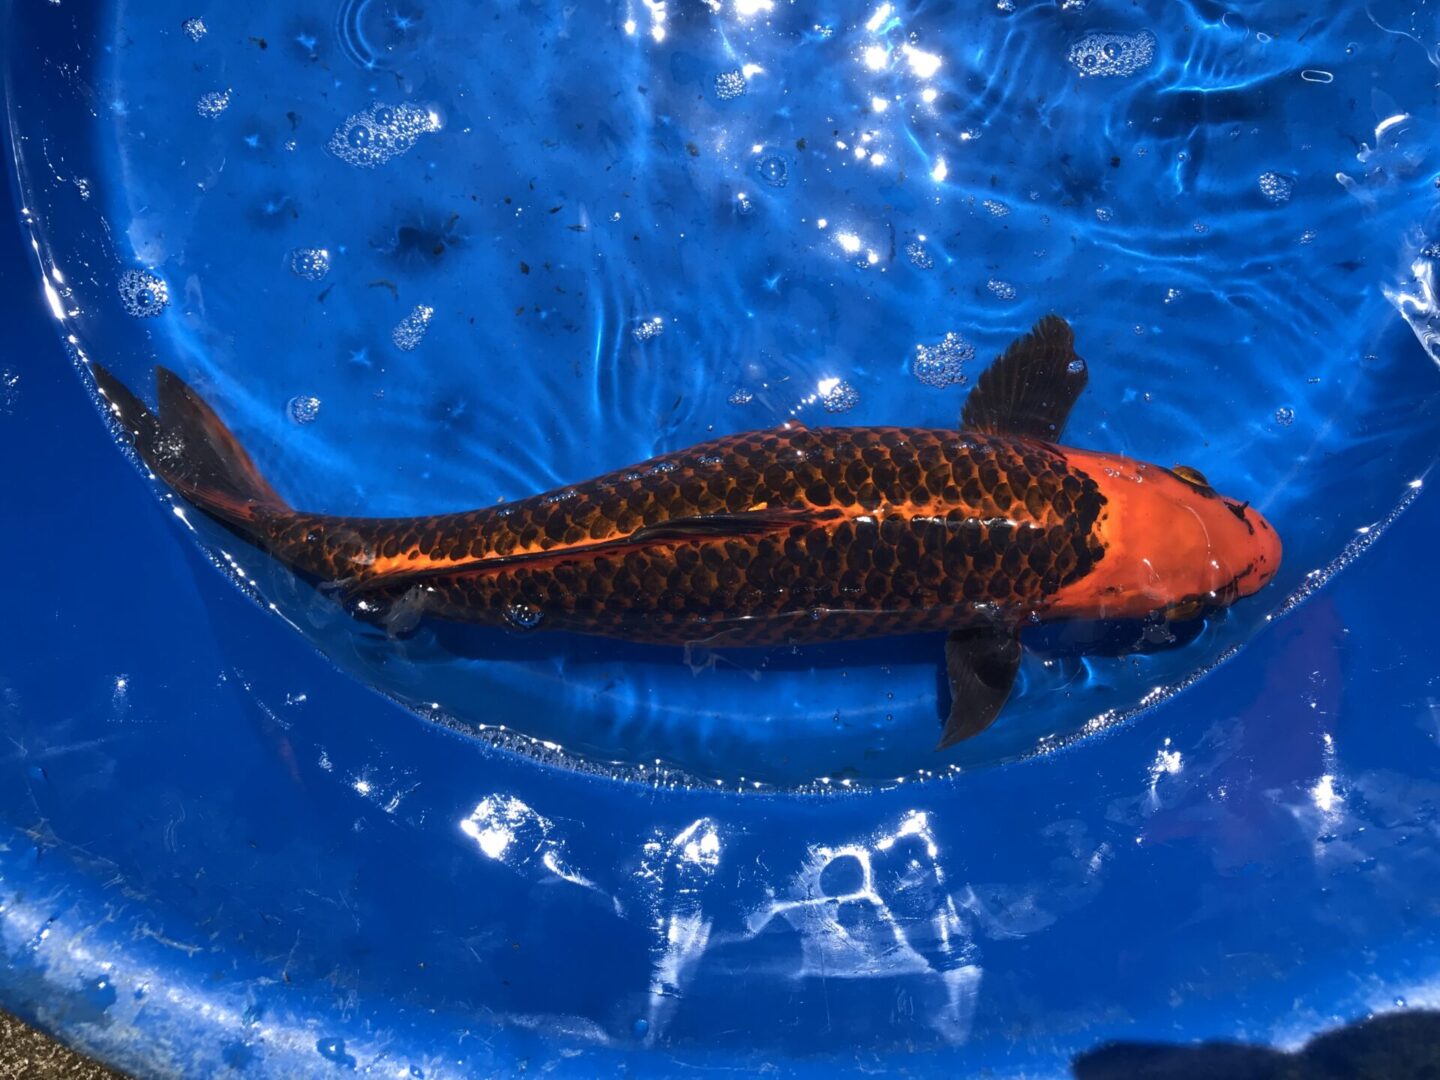 A dark-colored koi fish in a basin